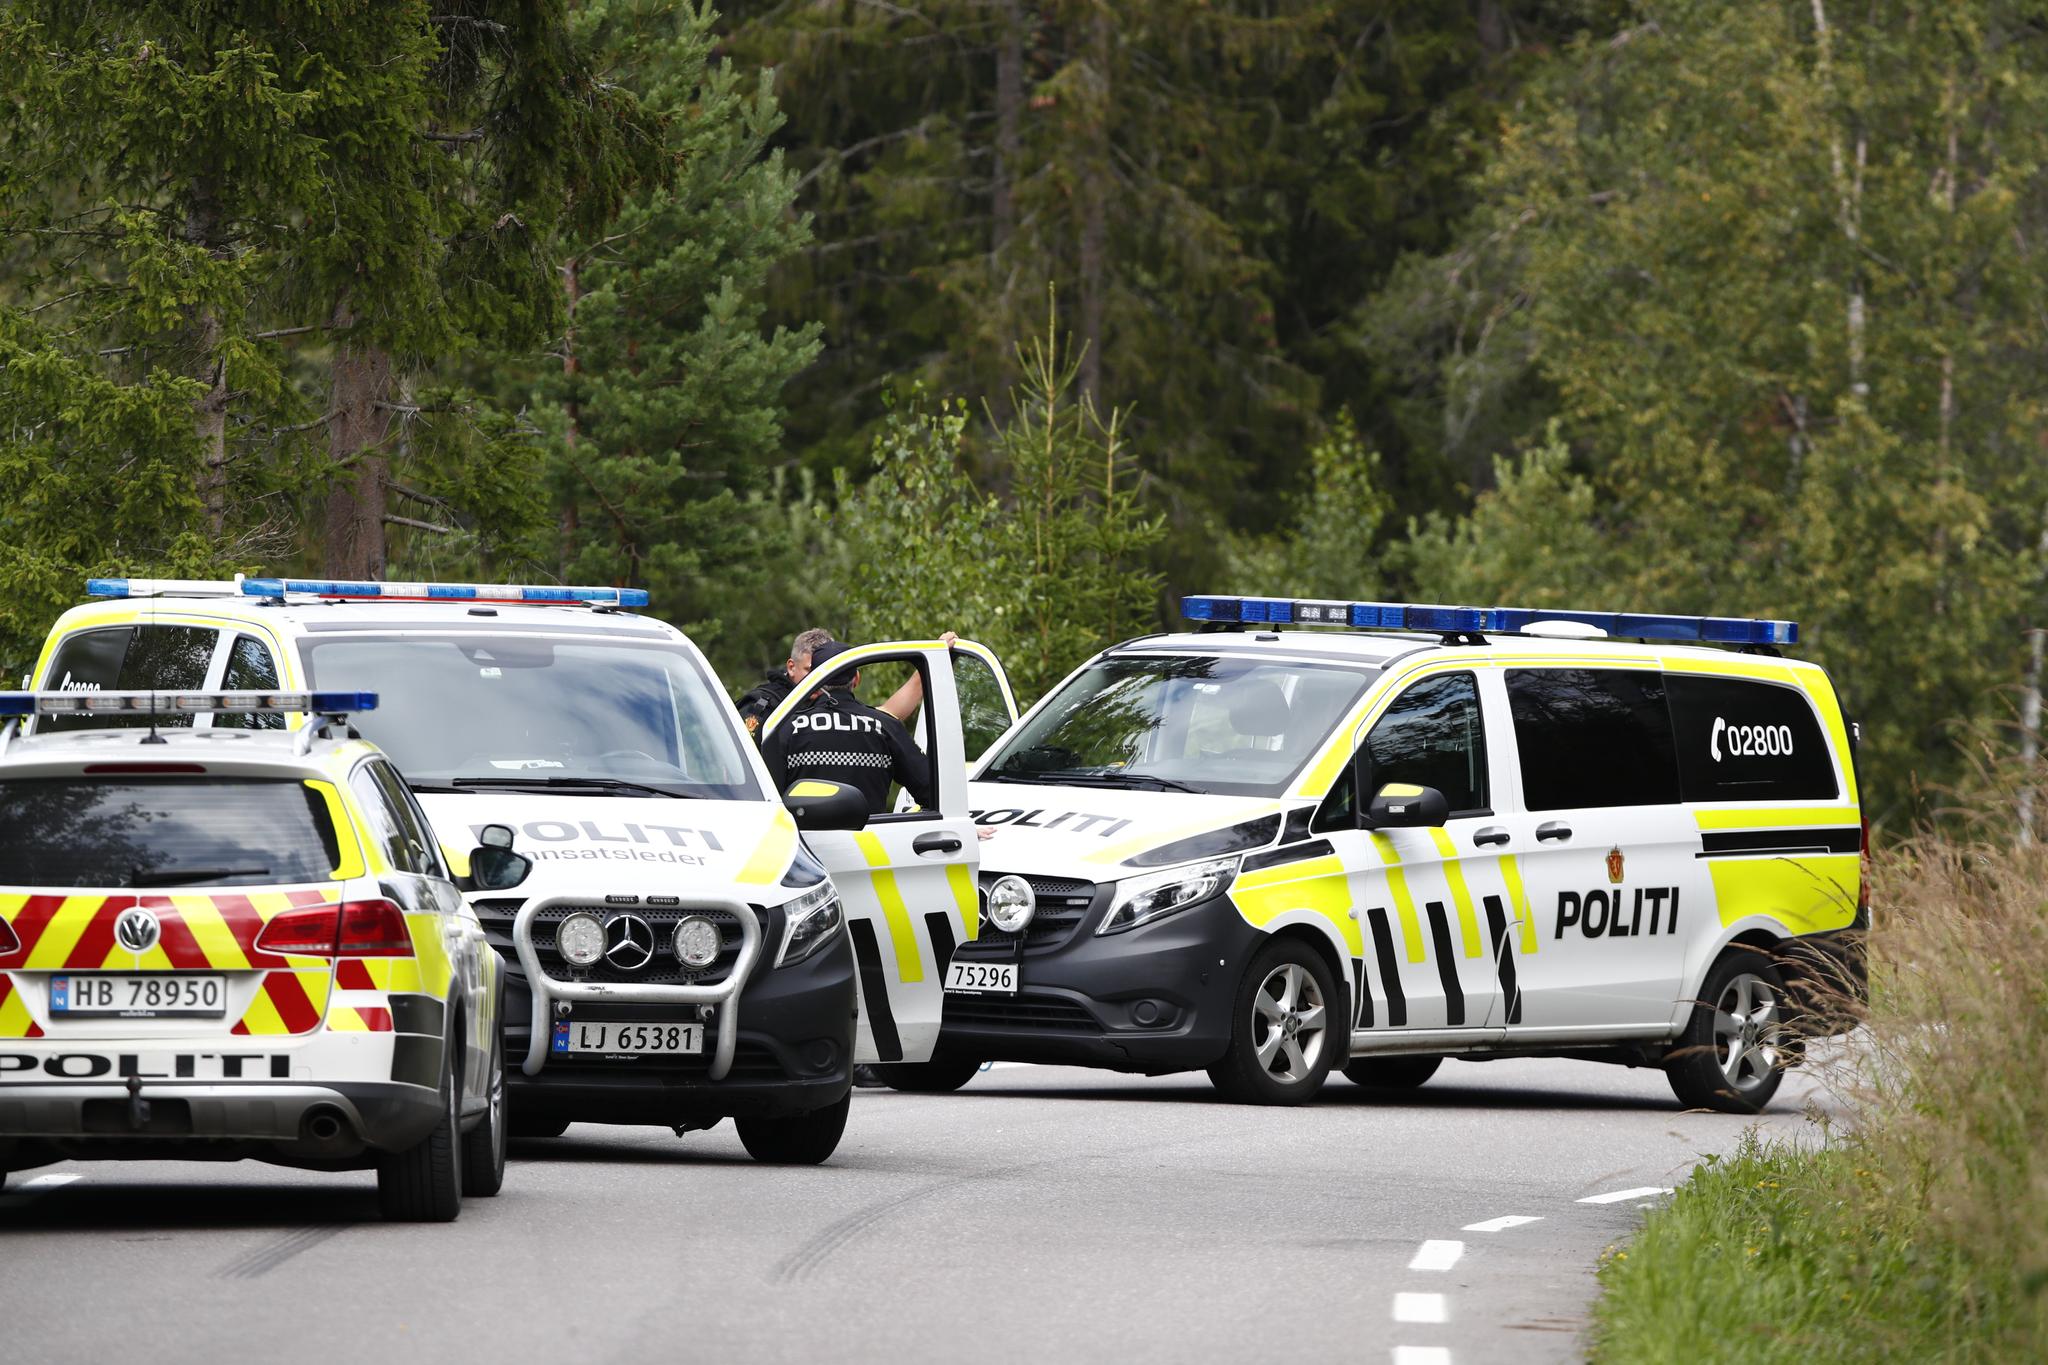 Det pågikk en væpnet aksjon i Oppland mandag, etter at en mann truet politiet med et stikkvåpen. Han ble senere skutt av politiet. 